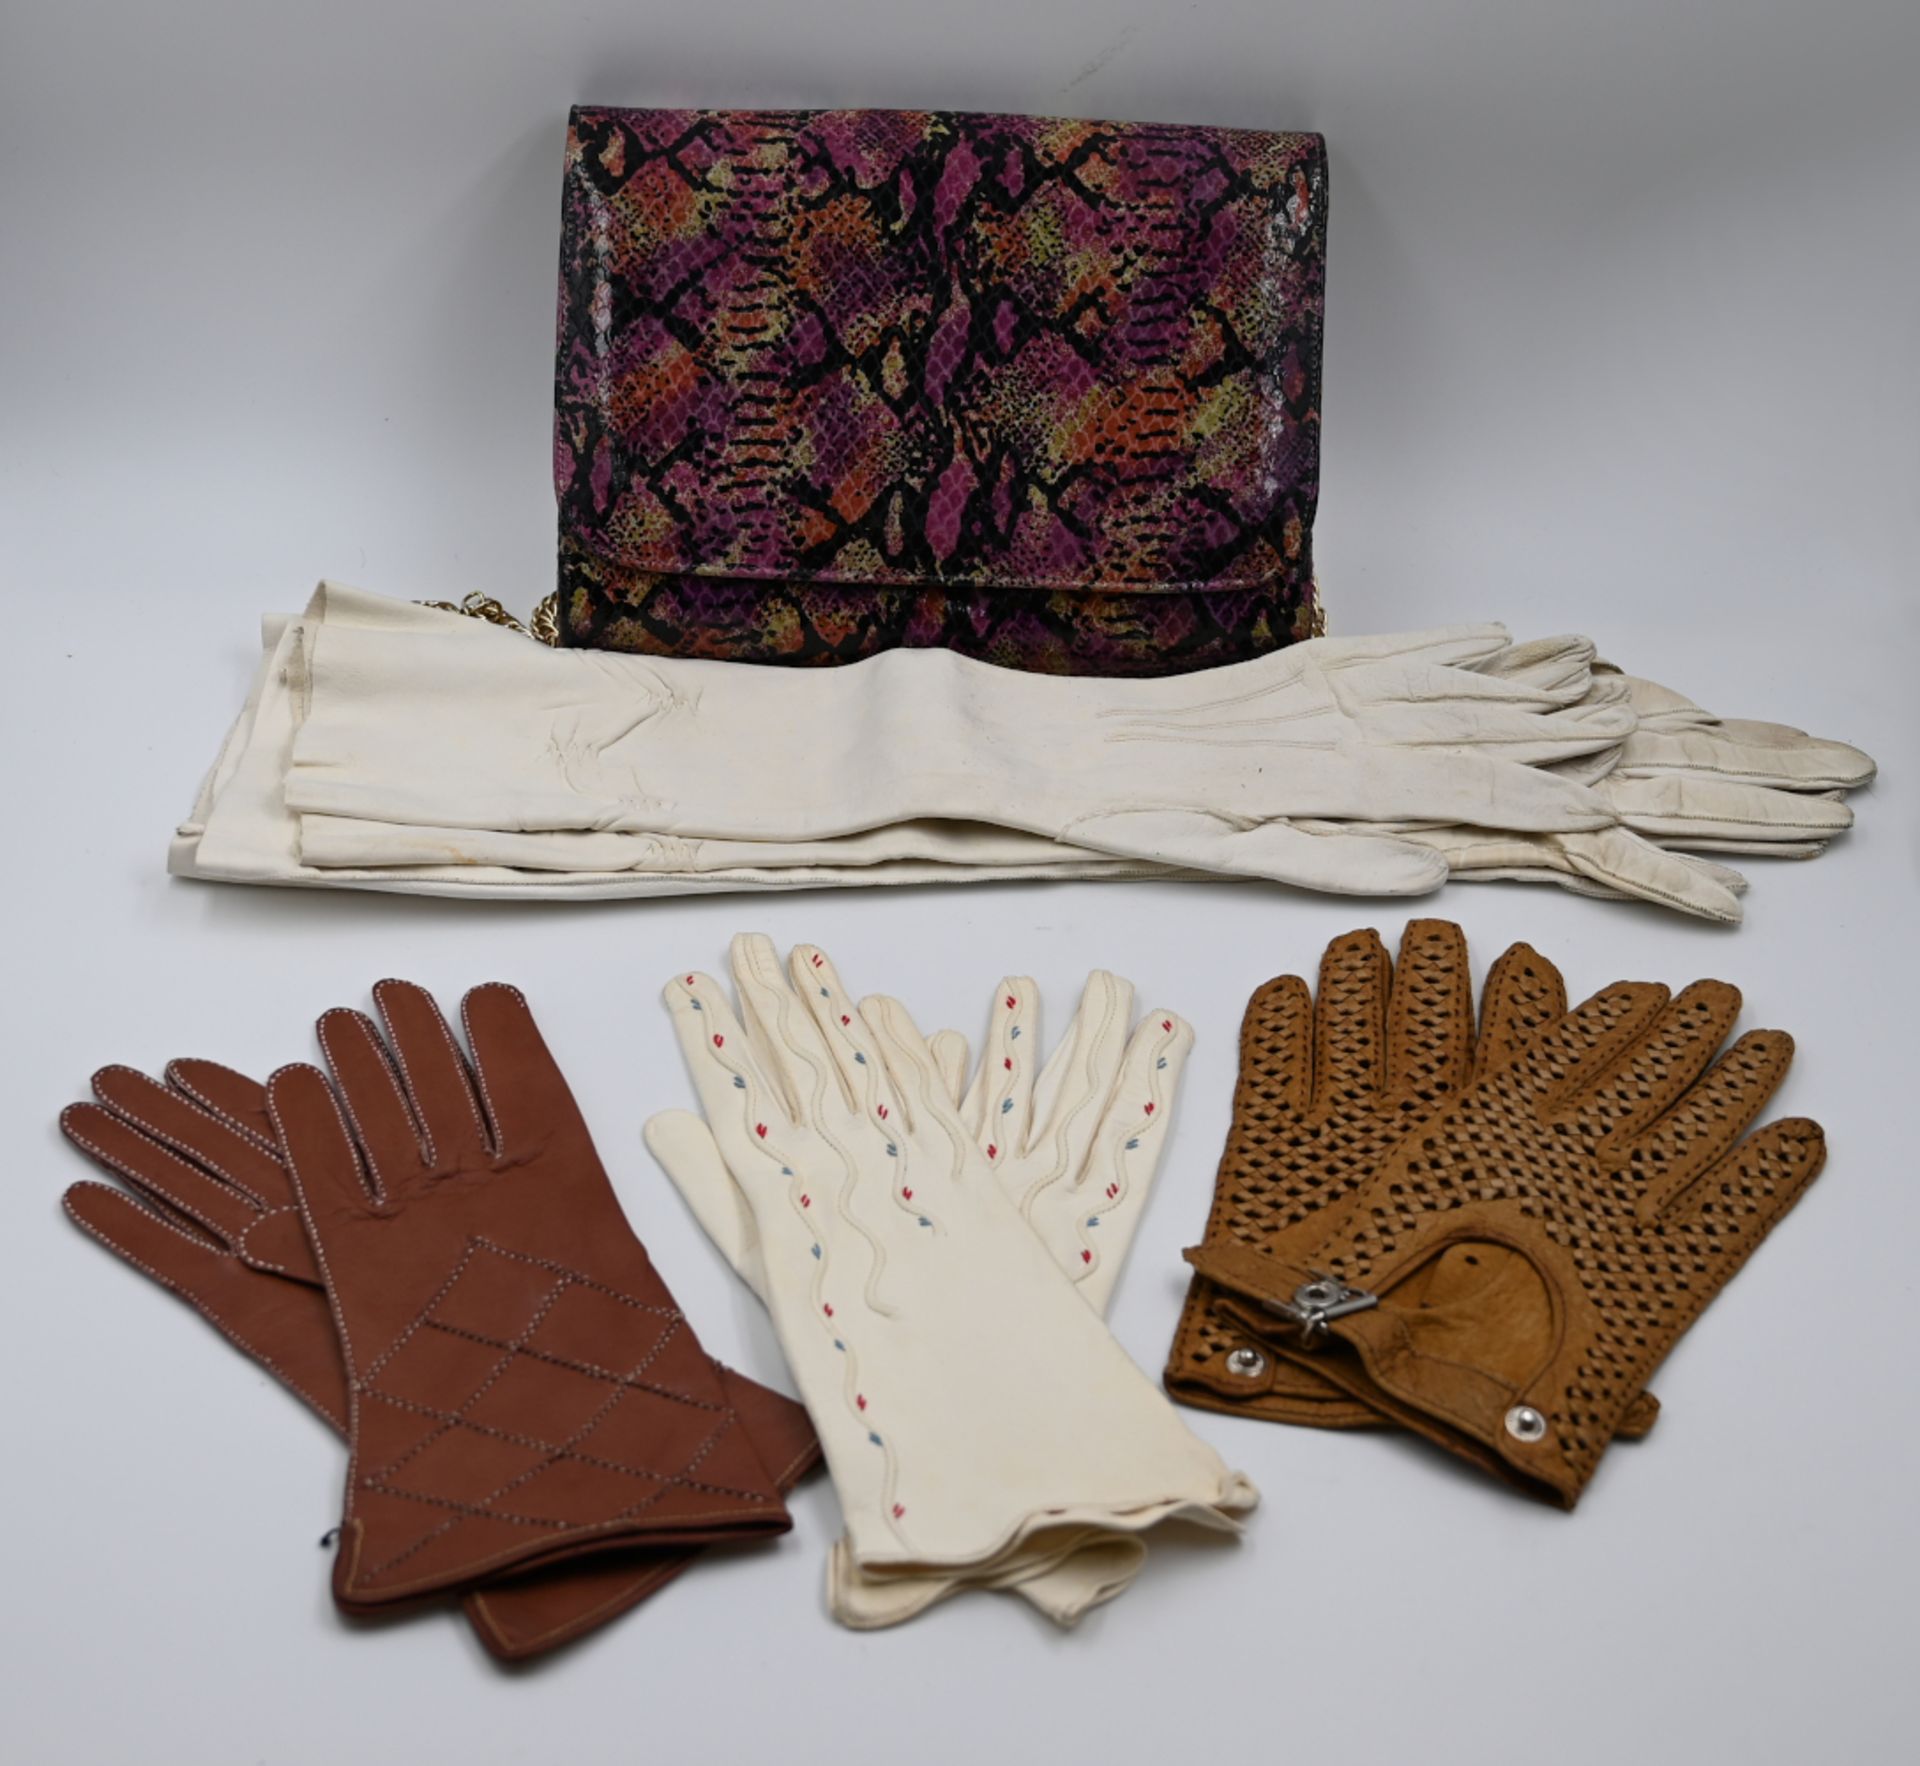 1 Konv. Gürtel (z.T. ESCADA), Taschen, Handschuhe sowie 1 Paar Stiefel schwarz Gr. 37, je z.T. Leder - Bild 4 aus 4